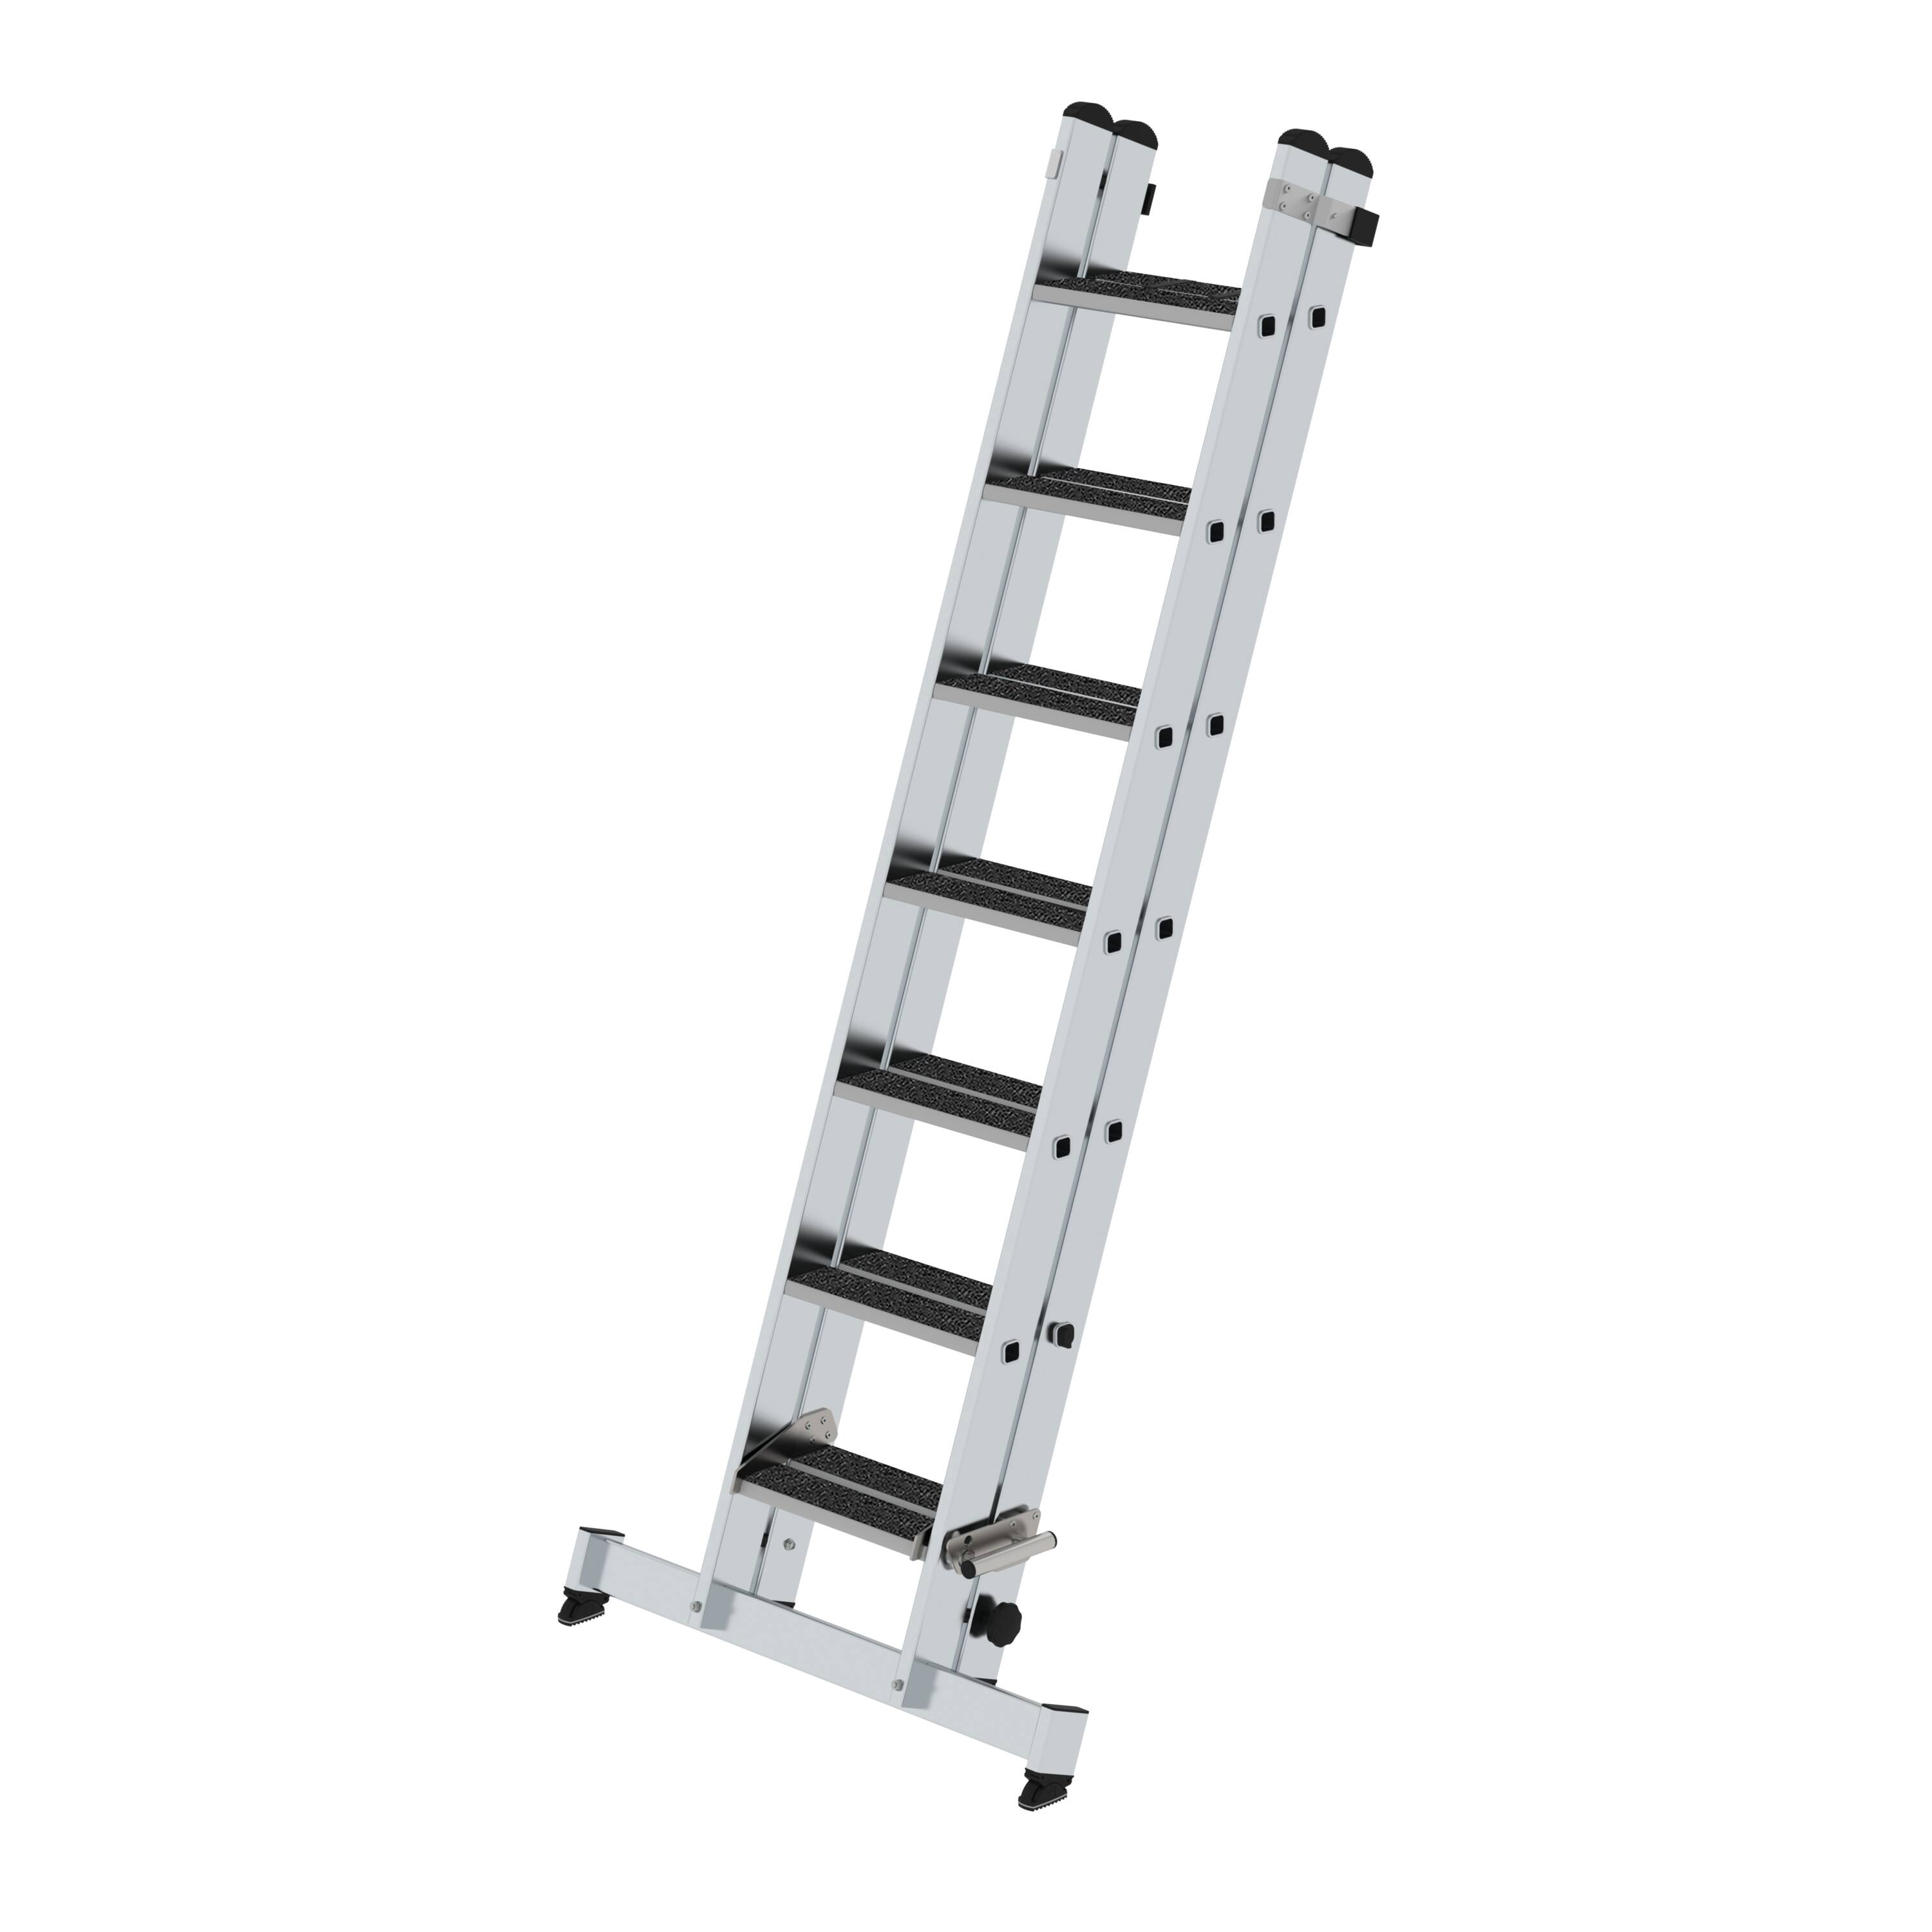 MUNK Stufen-Schiebeleiter 2-teilig mit nivello-Traverse und clip-step R13  